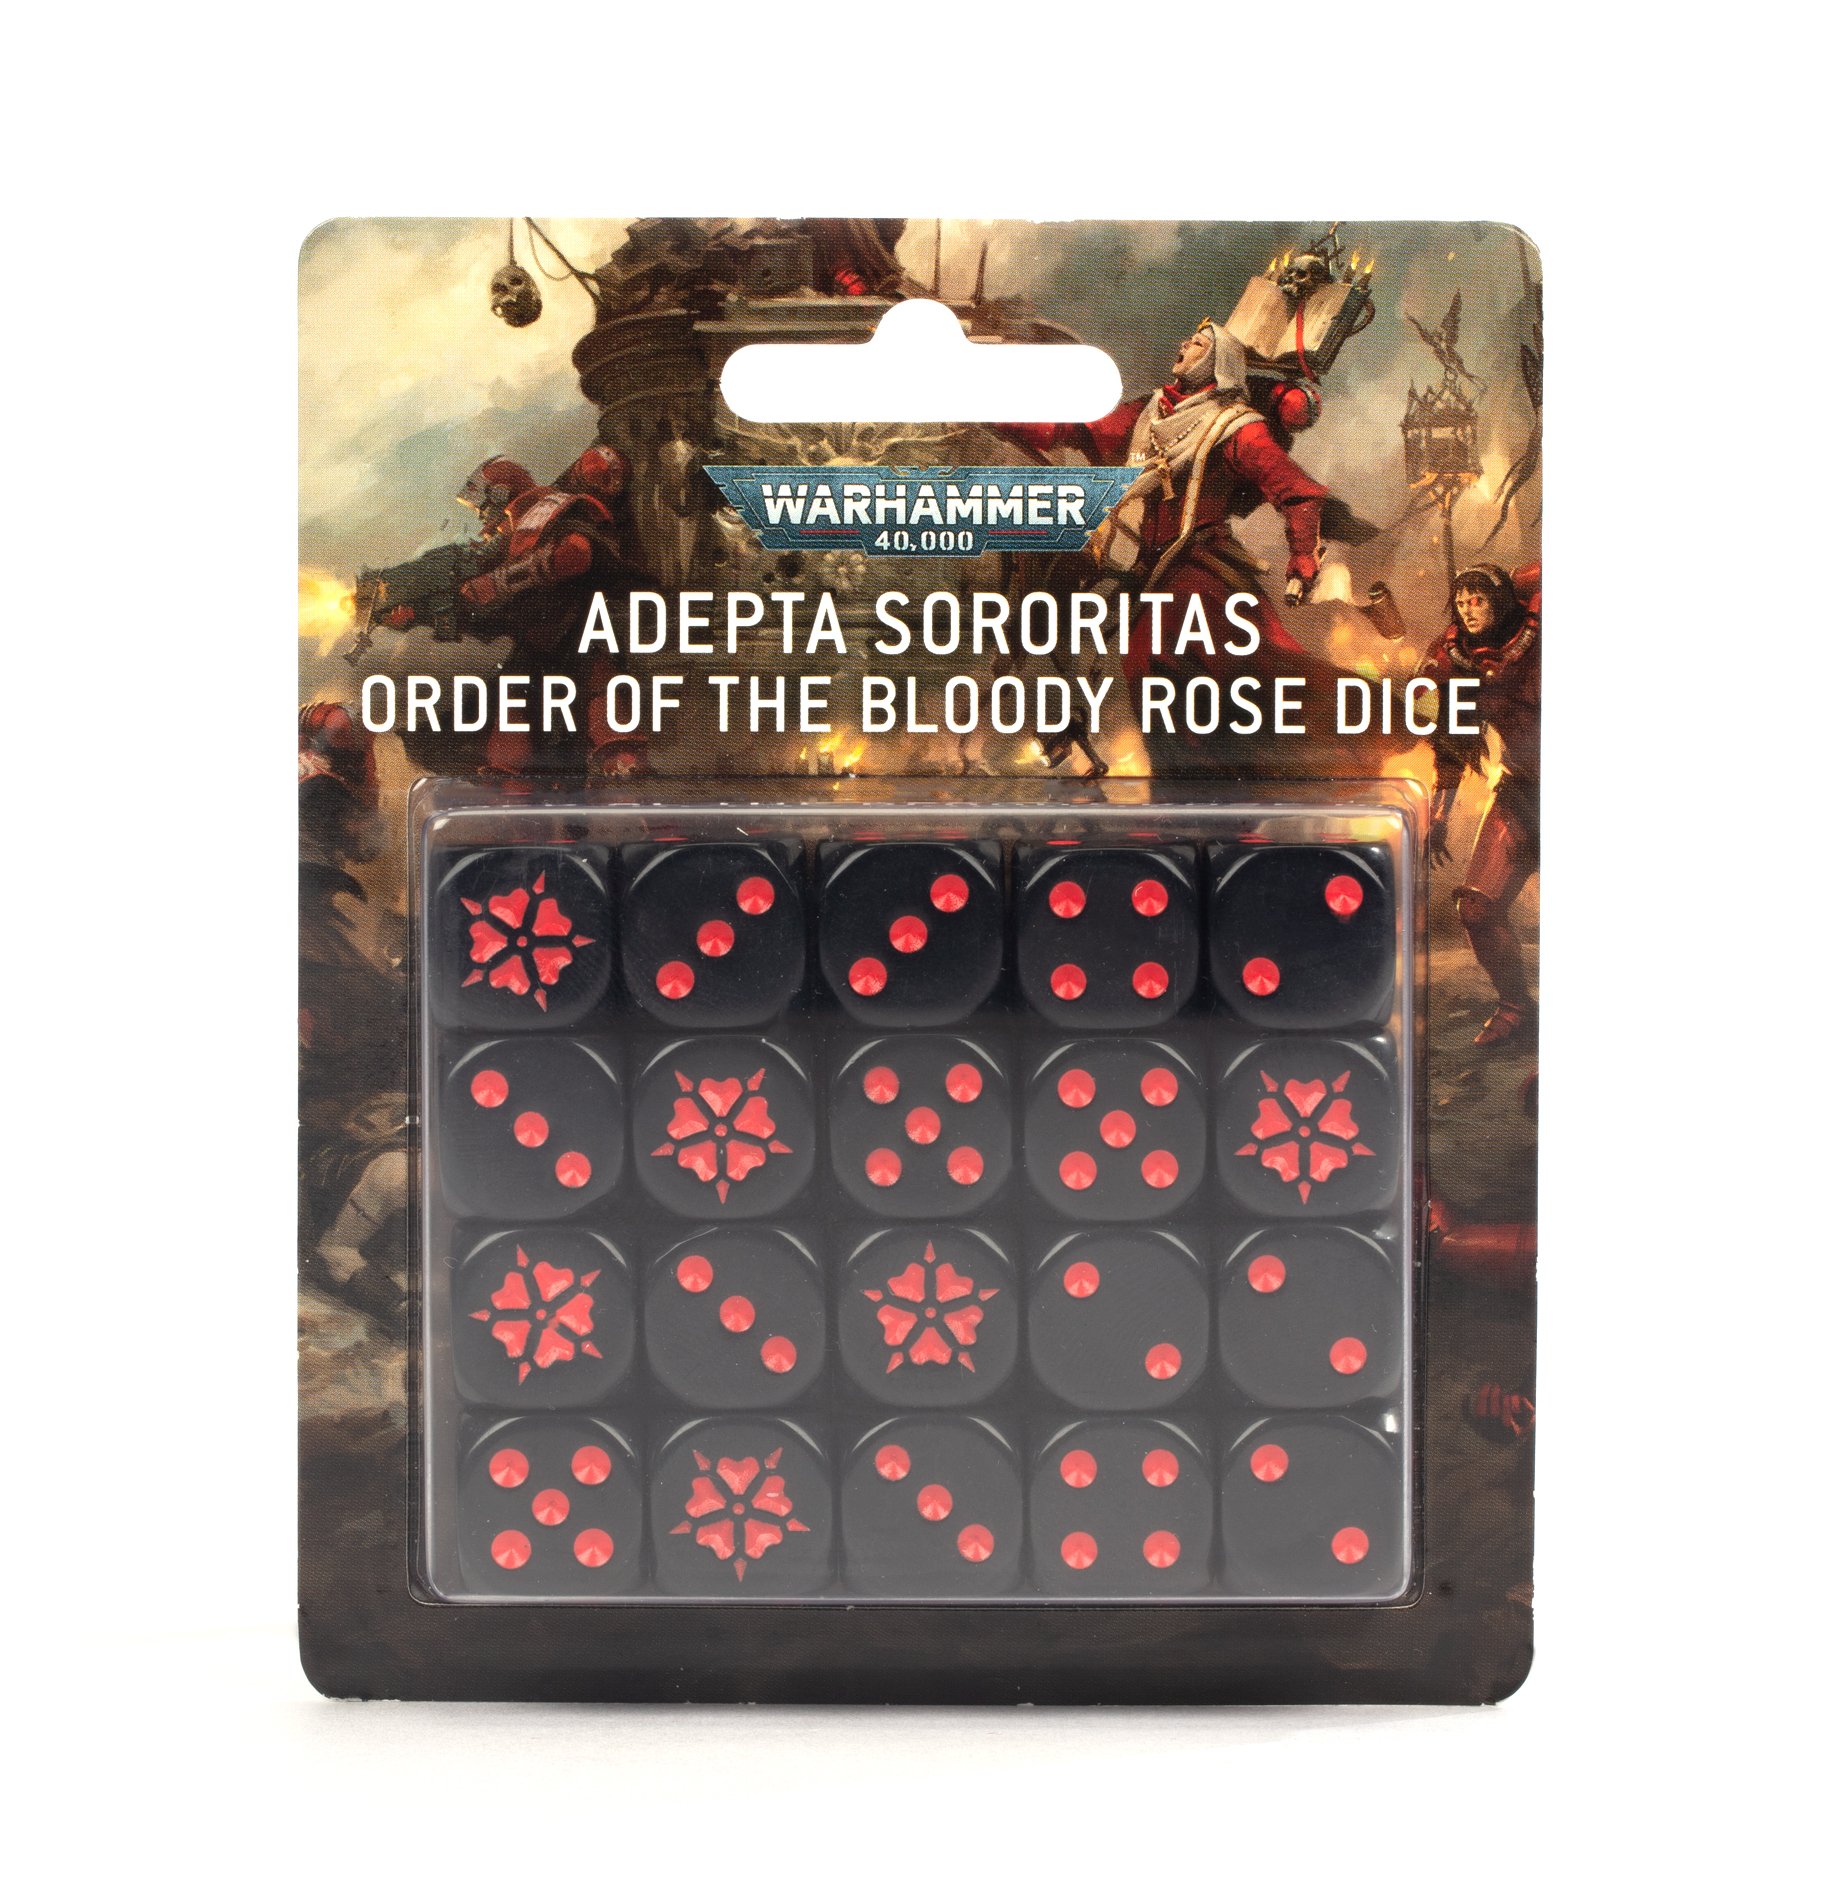 Adepta Sororitas: Order of the Bloody Rose